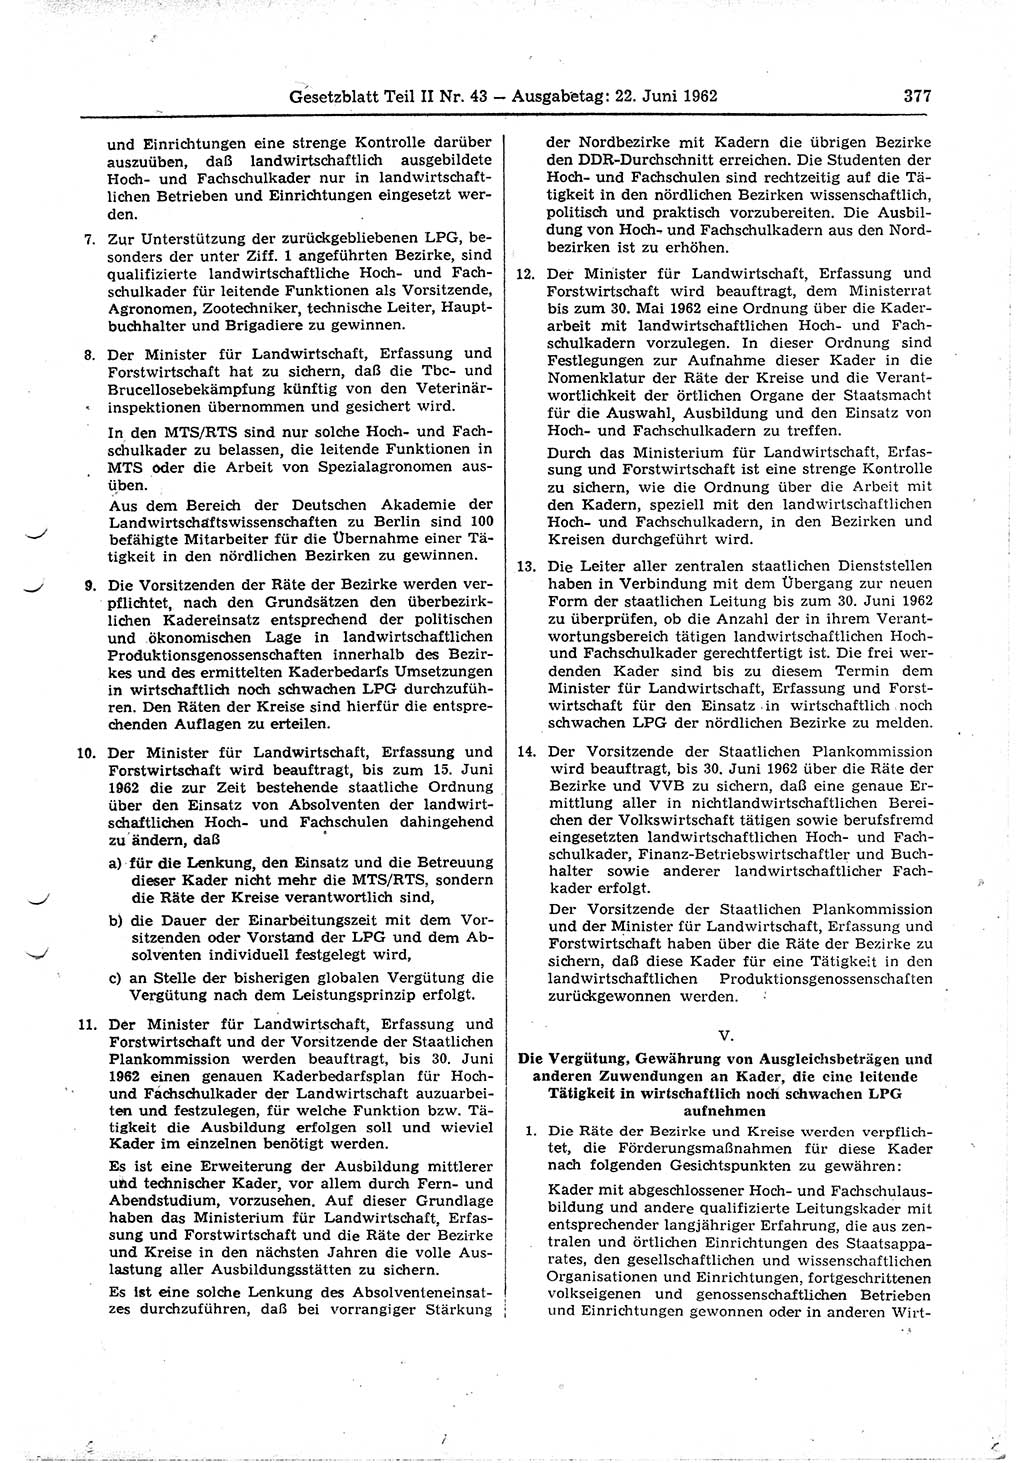 Gesetzblatt (GBl.) der Deutschen Demokratischen Republik (DDR) Teil ⅠⅠ 1962, Seite 377 (GBl. DDR ⅠⅠ 1962, S. 377)